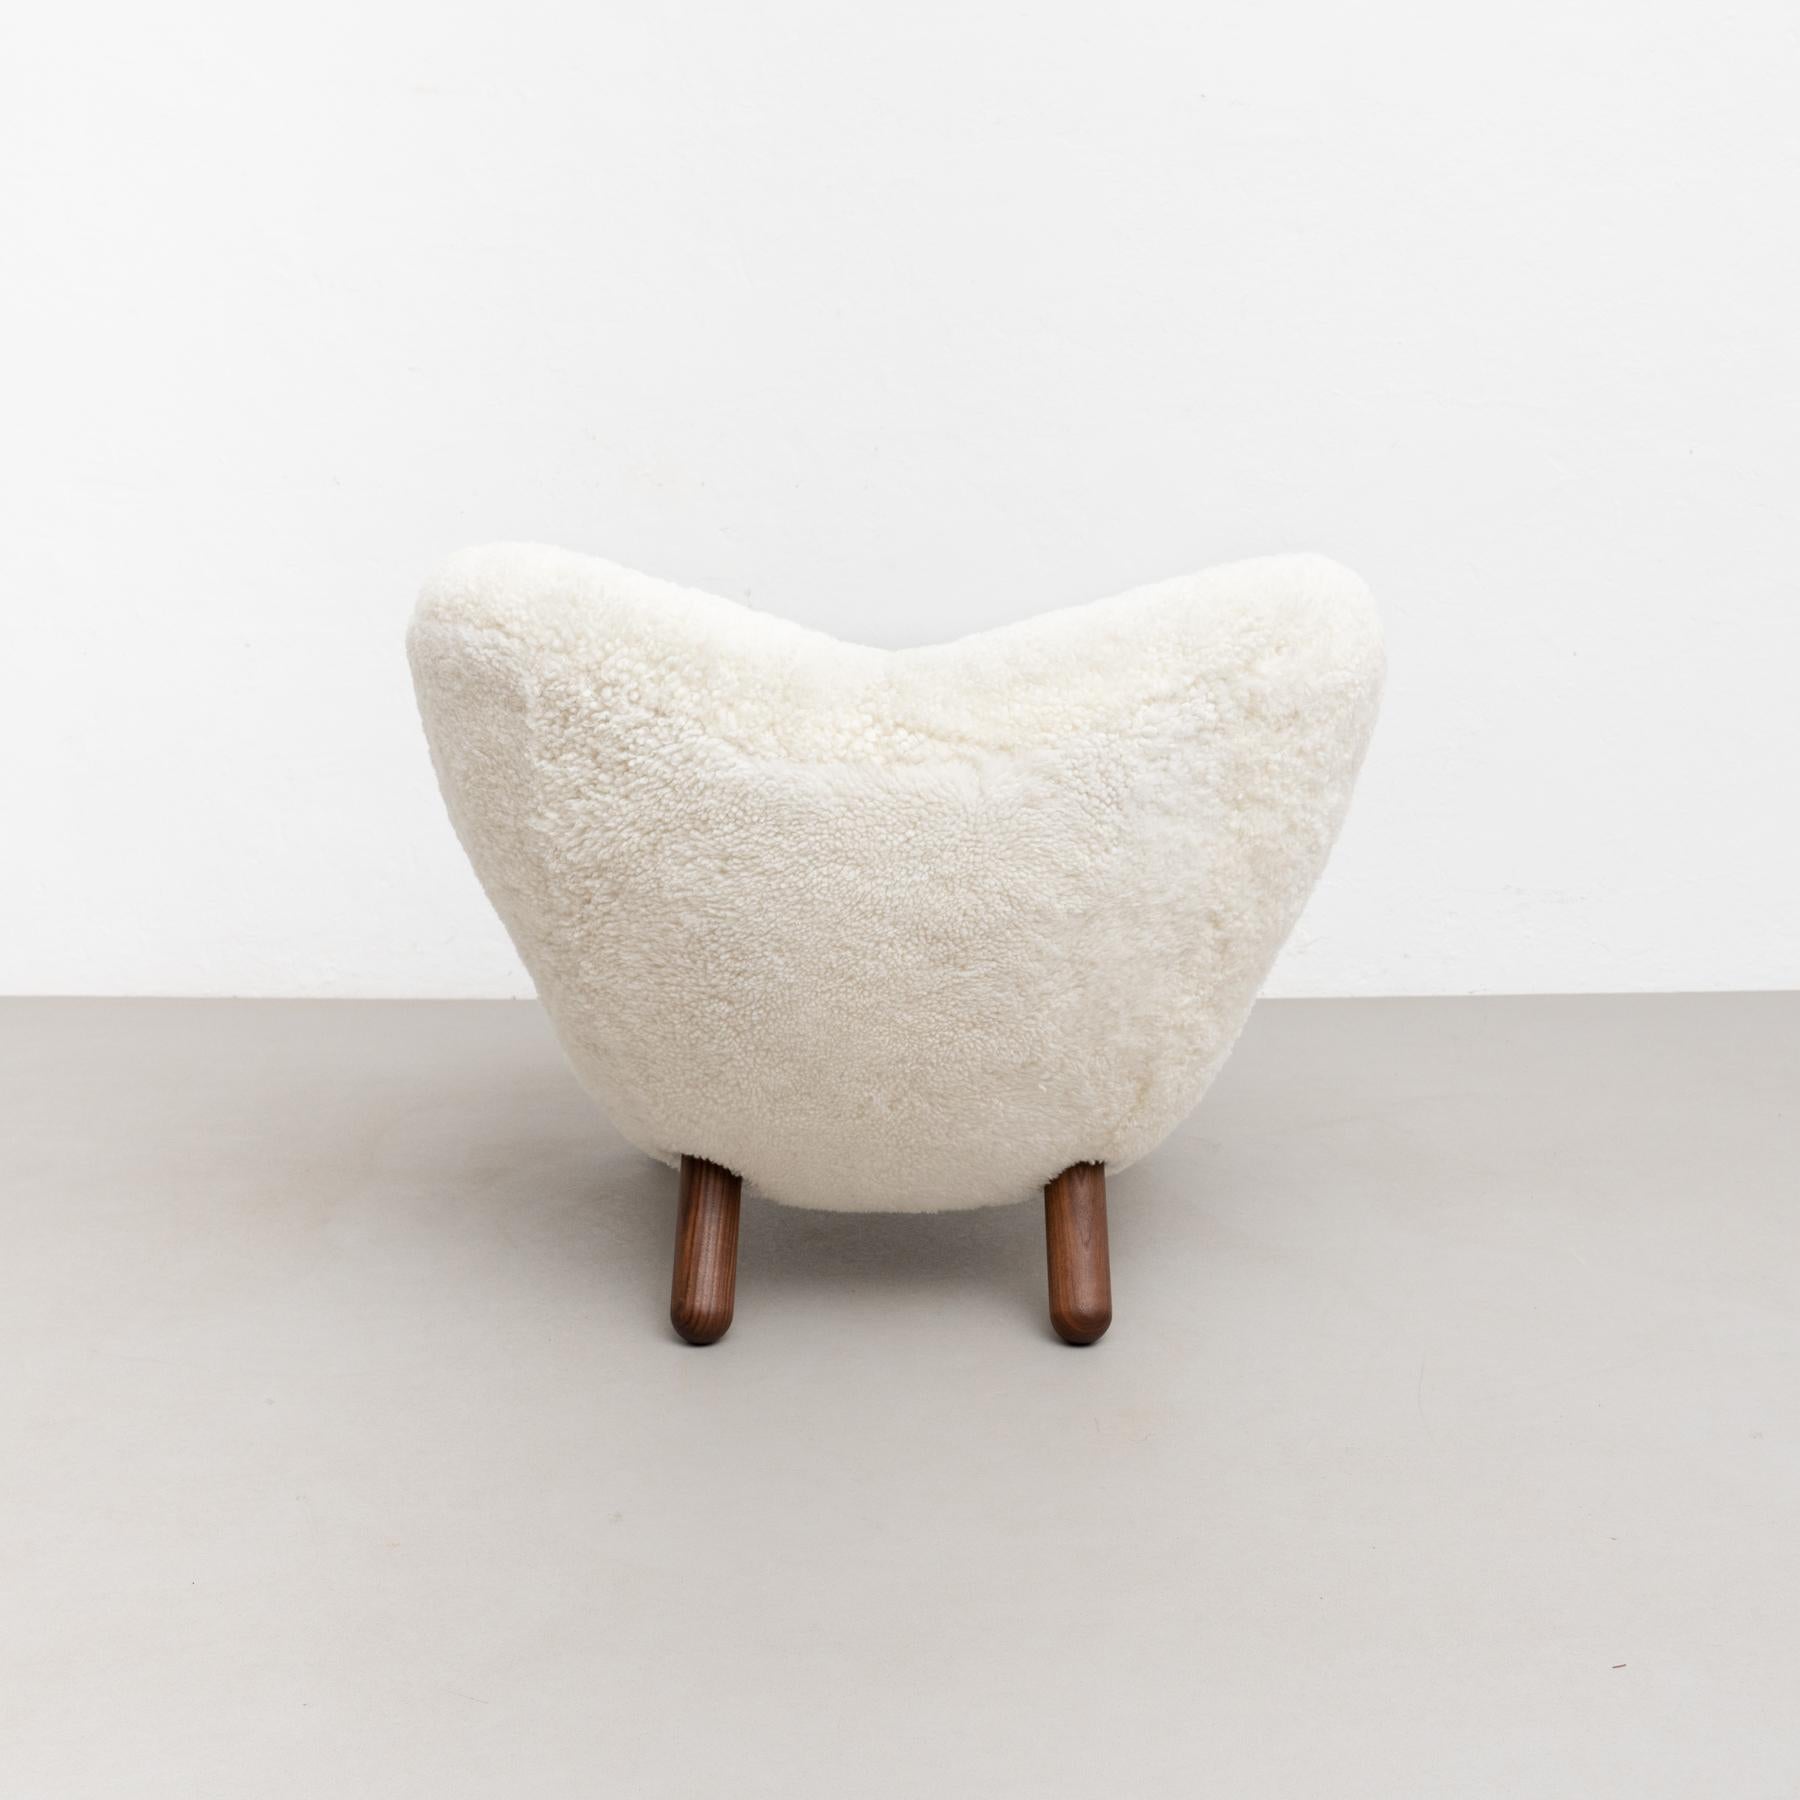 Finn Juhl Pelican Chair Upholstered in Gotland Sheepskin For Sale 6